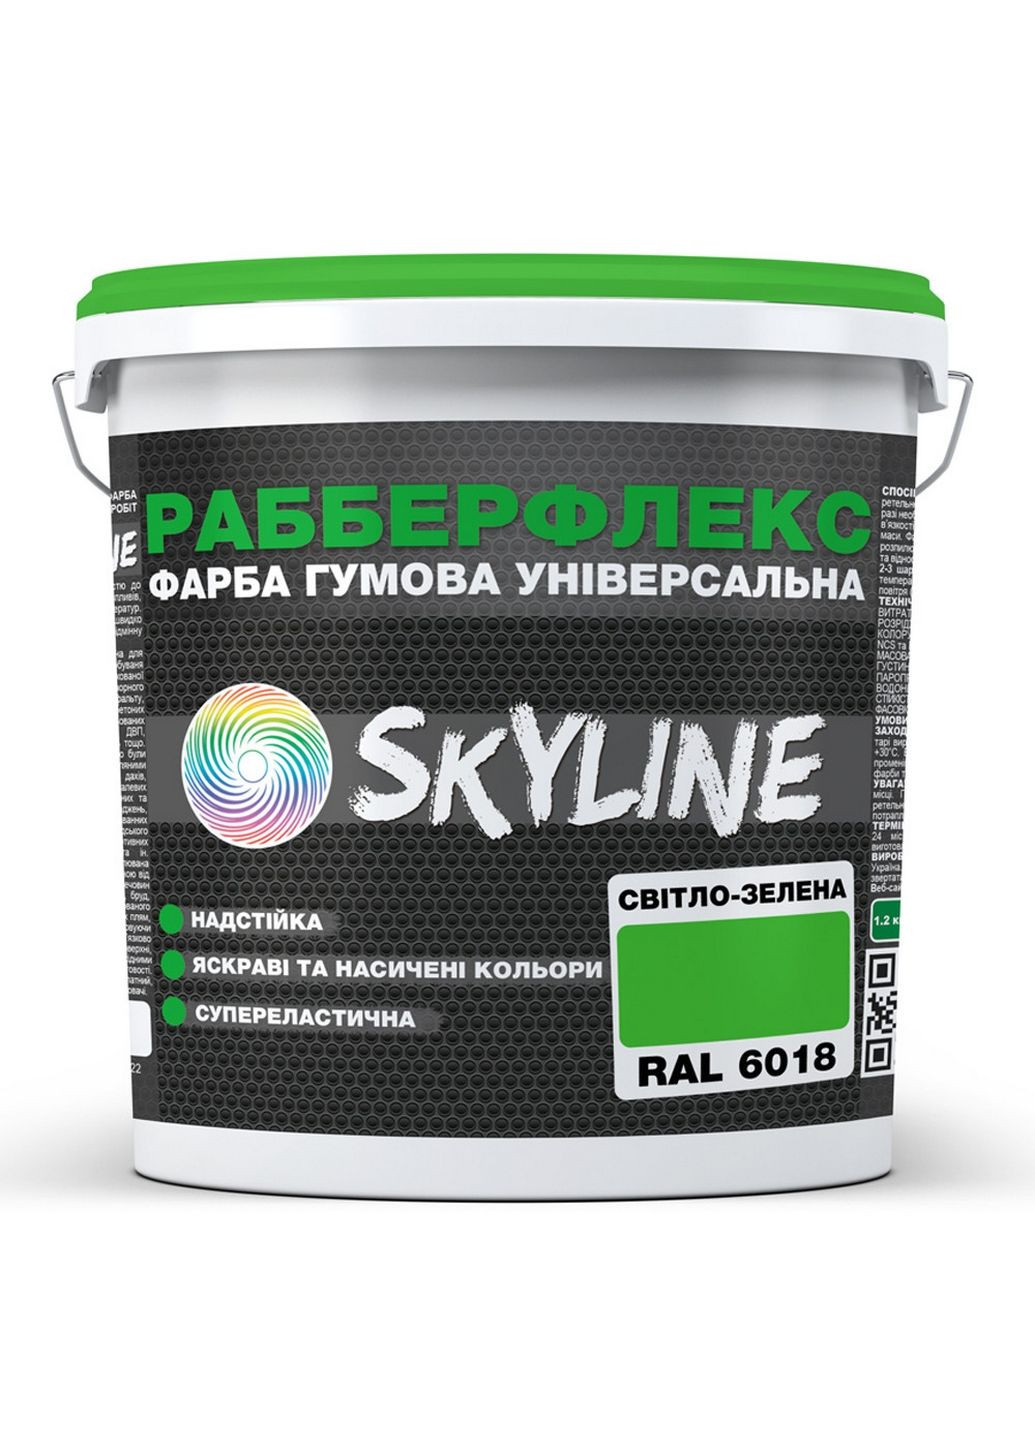 Краска резиновая суперэластичная сверхстойкая «РабберФлекс» 12 кг SkyLine (289461354)